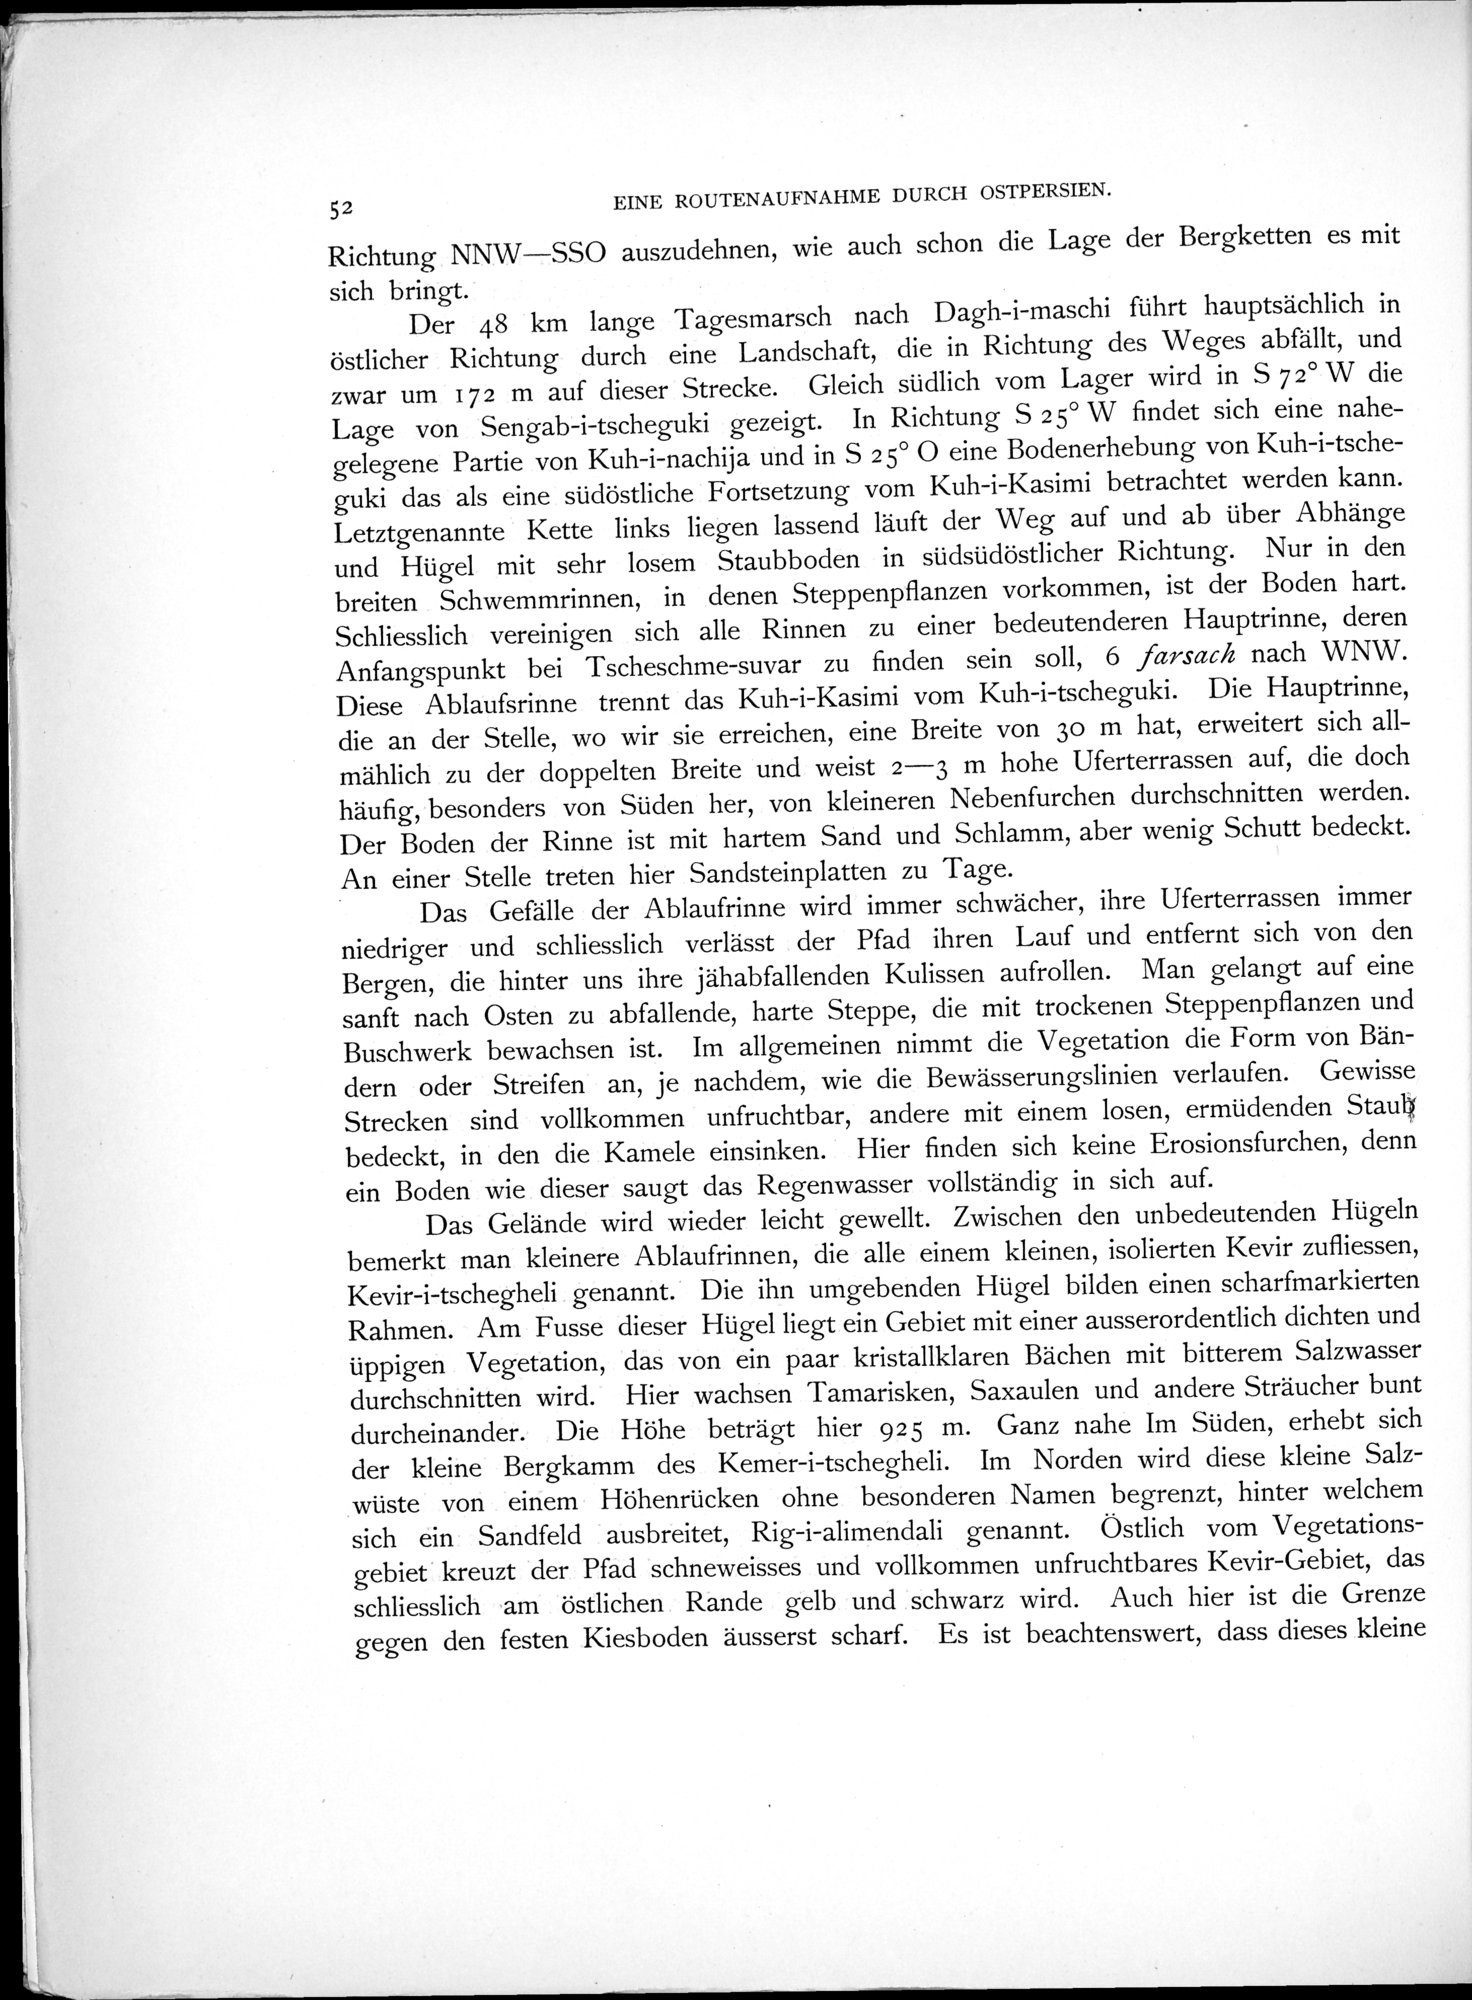 Eine Routenaufnahme durch Ostpersien : vol.1 / Page 170 (Grayscale High Resolution Image)